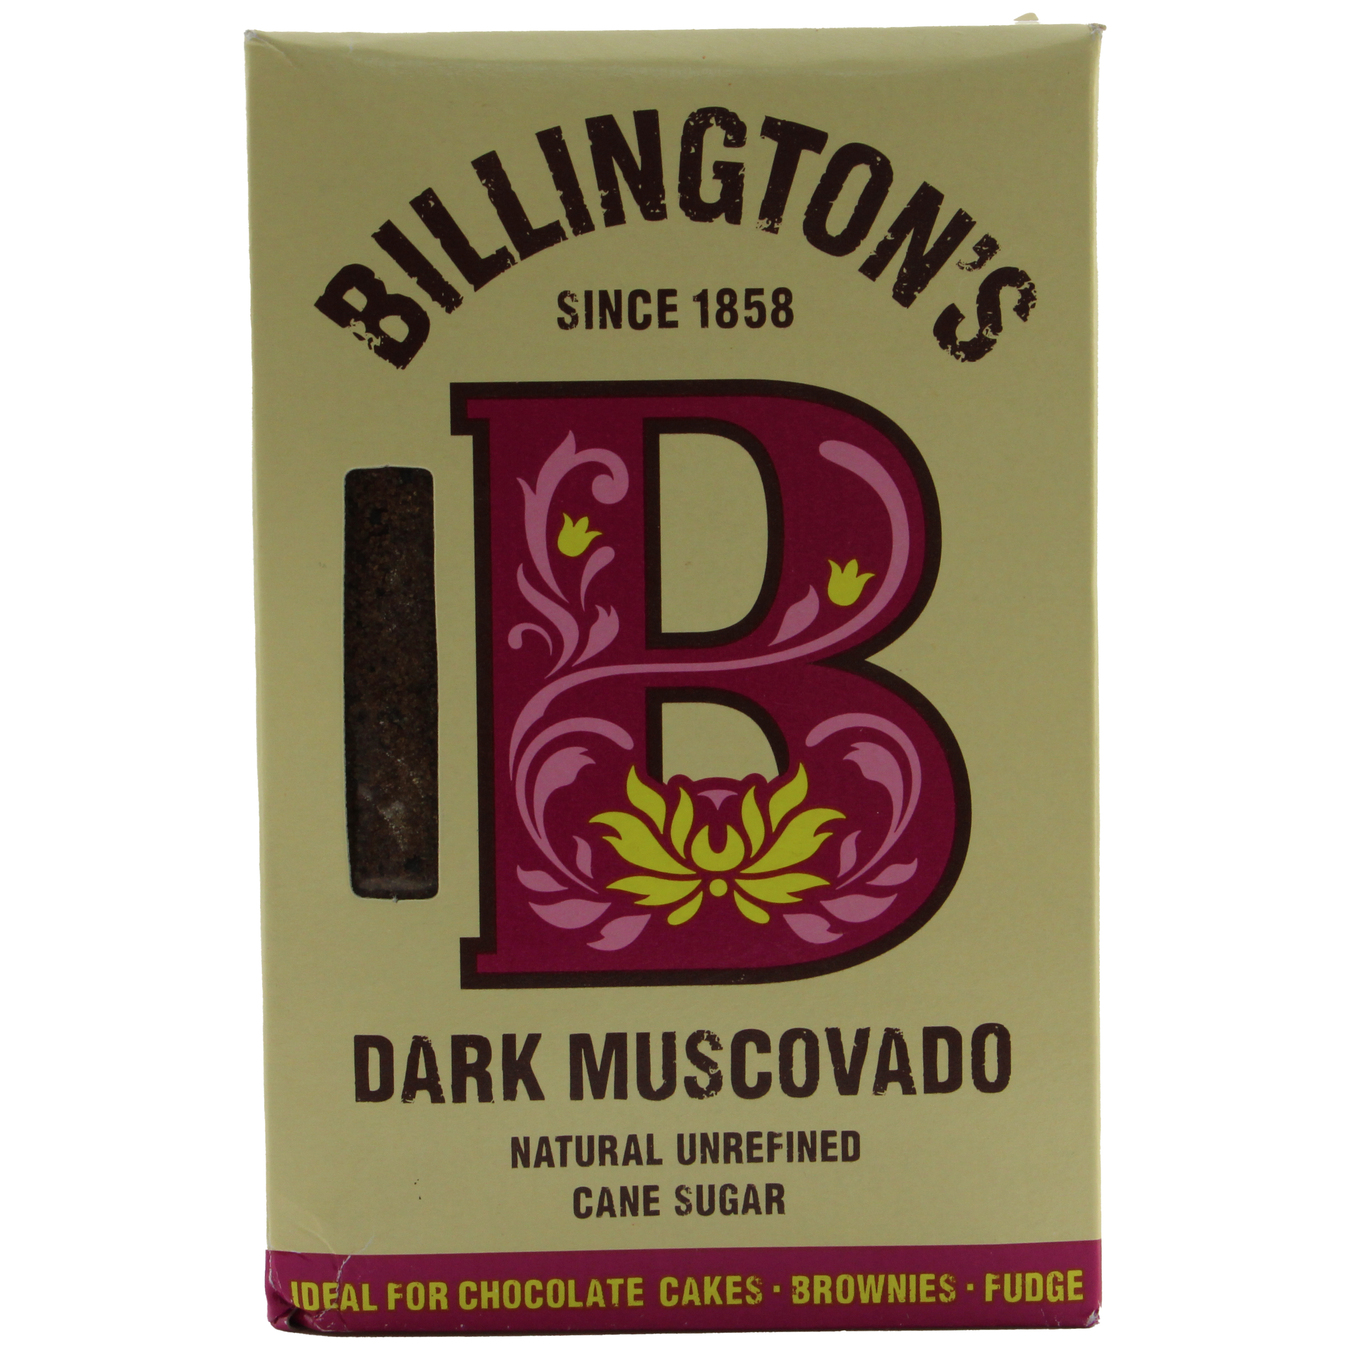 Billingtons Muscovado Unrefined Cane Sugar 500g